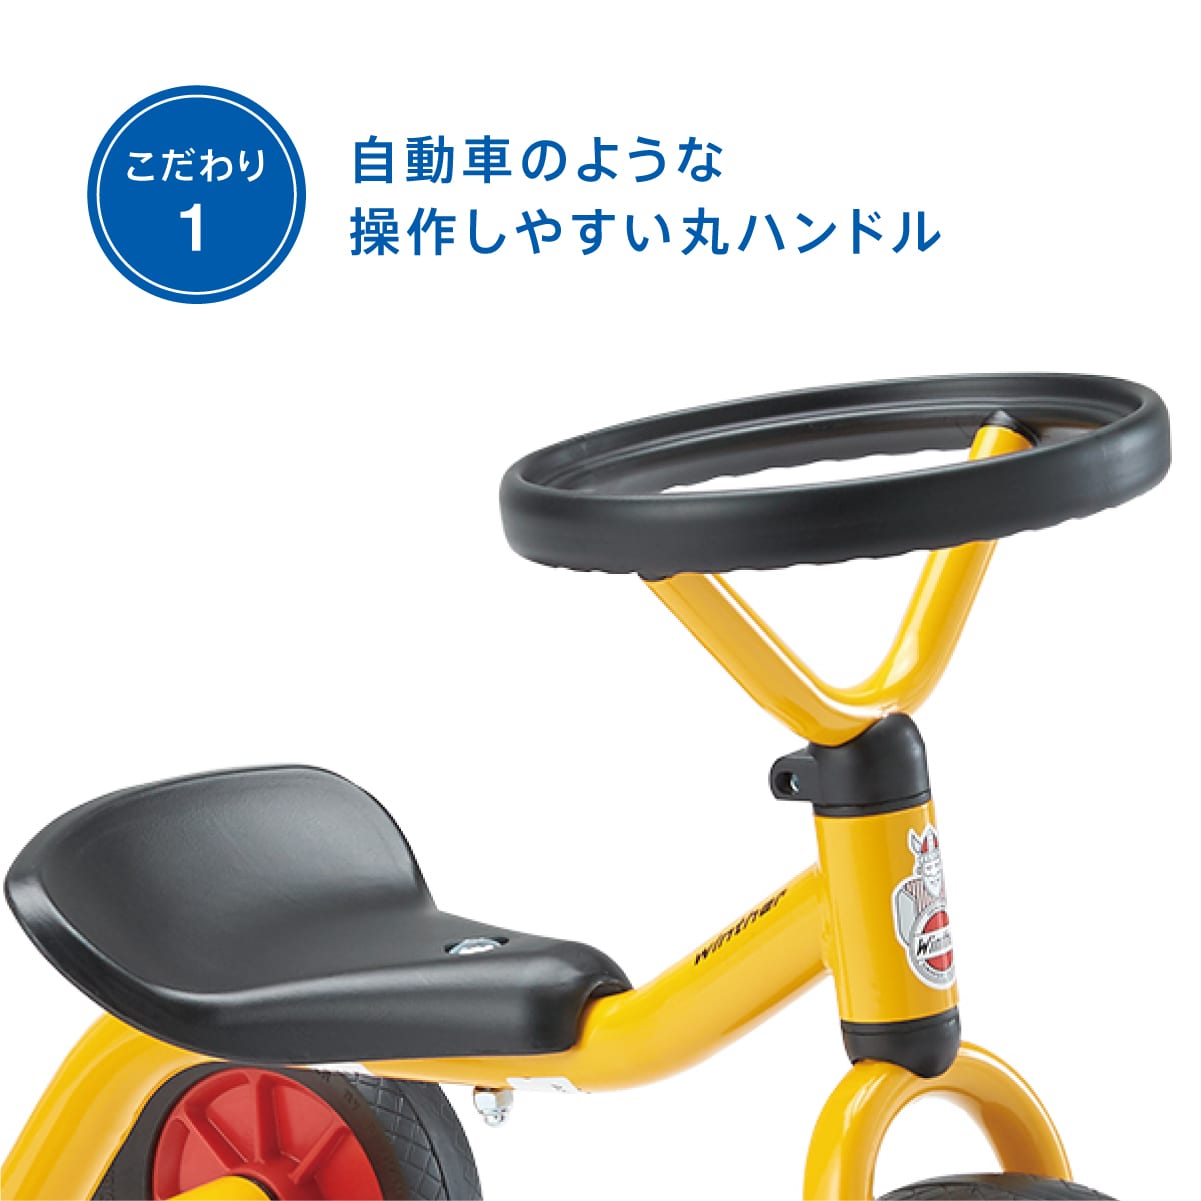 ペリカンデザイン三輪車 丸ハンドル 黄色: ボーネルンド  オンラインショップ。世界中の知育玩具など、あそび道具がたくさん。0歳からのお子様へのプレゼントにも。